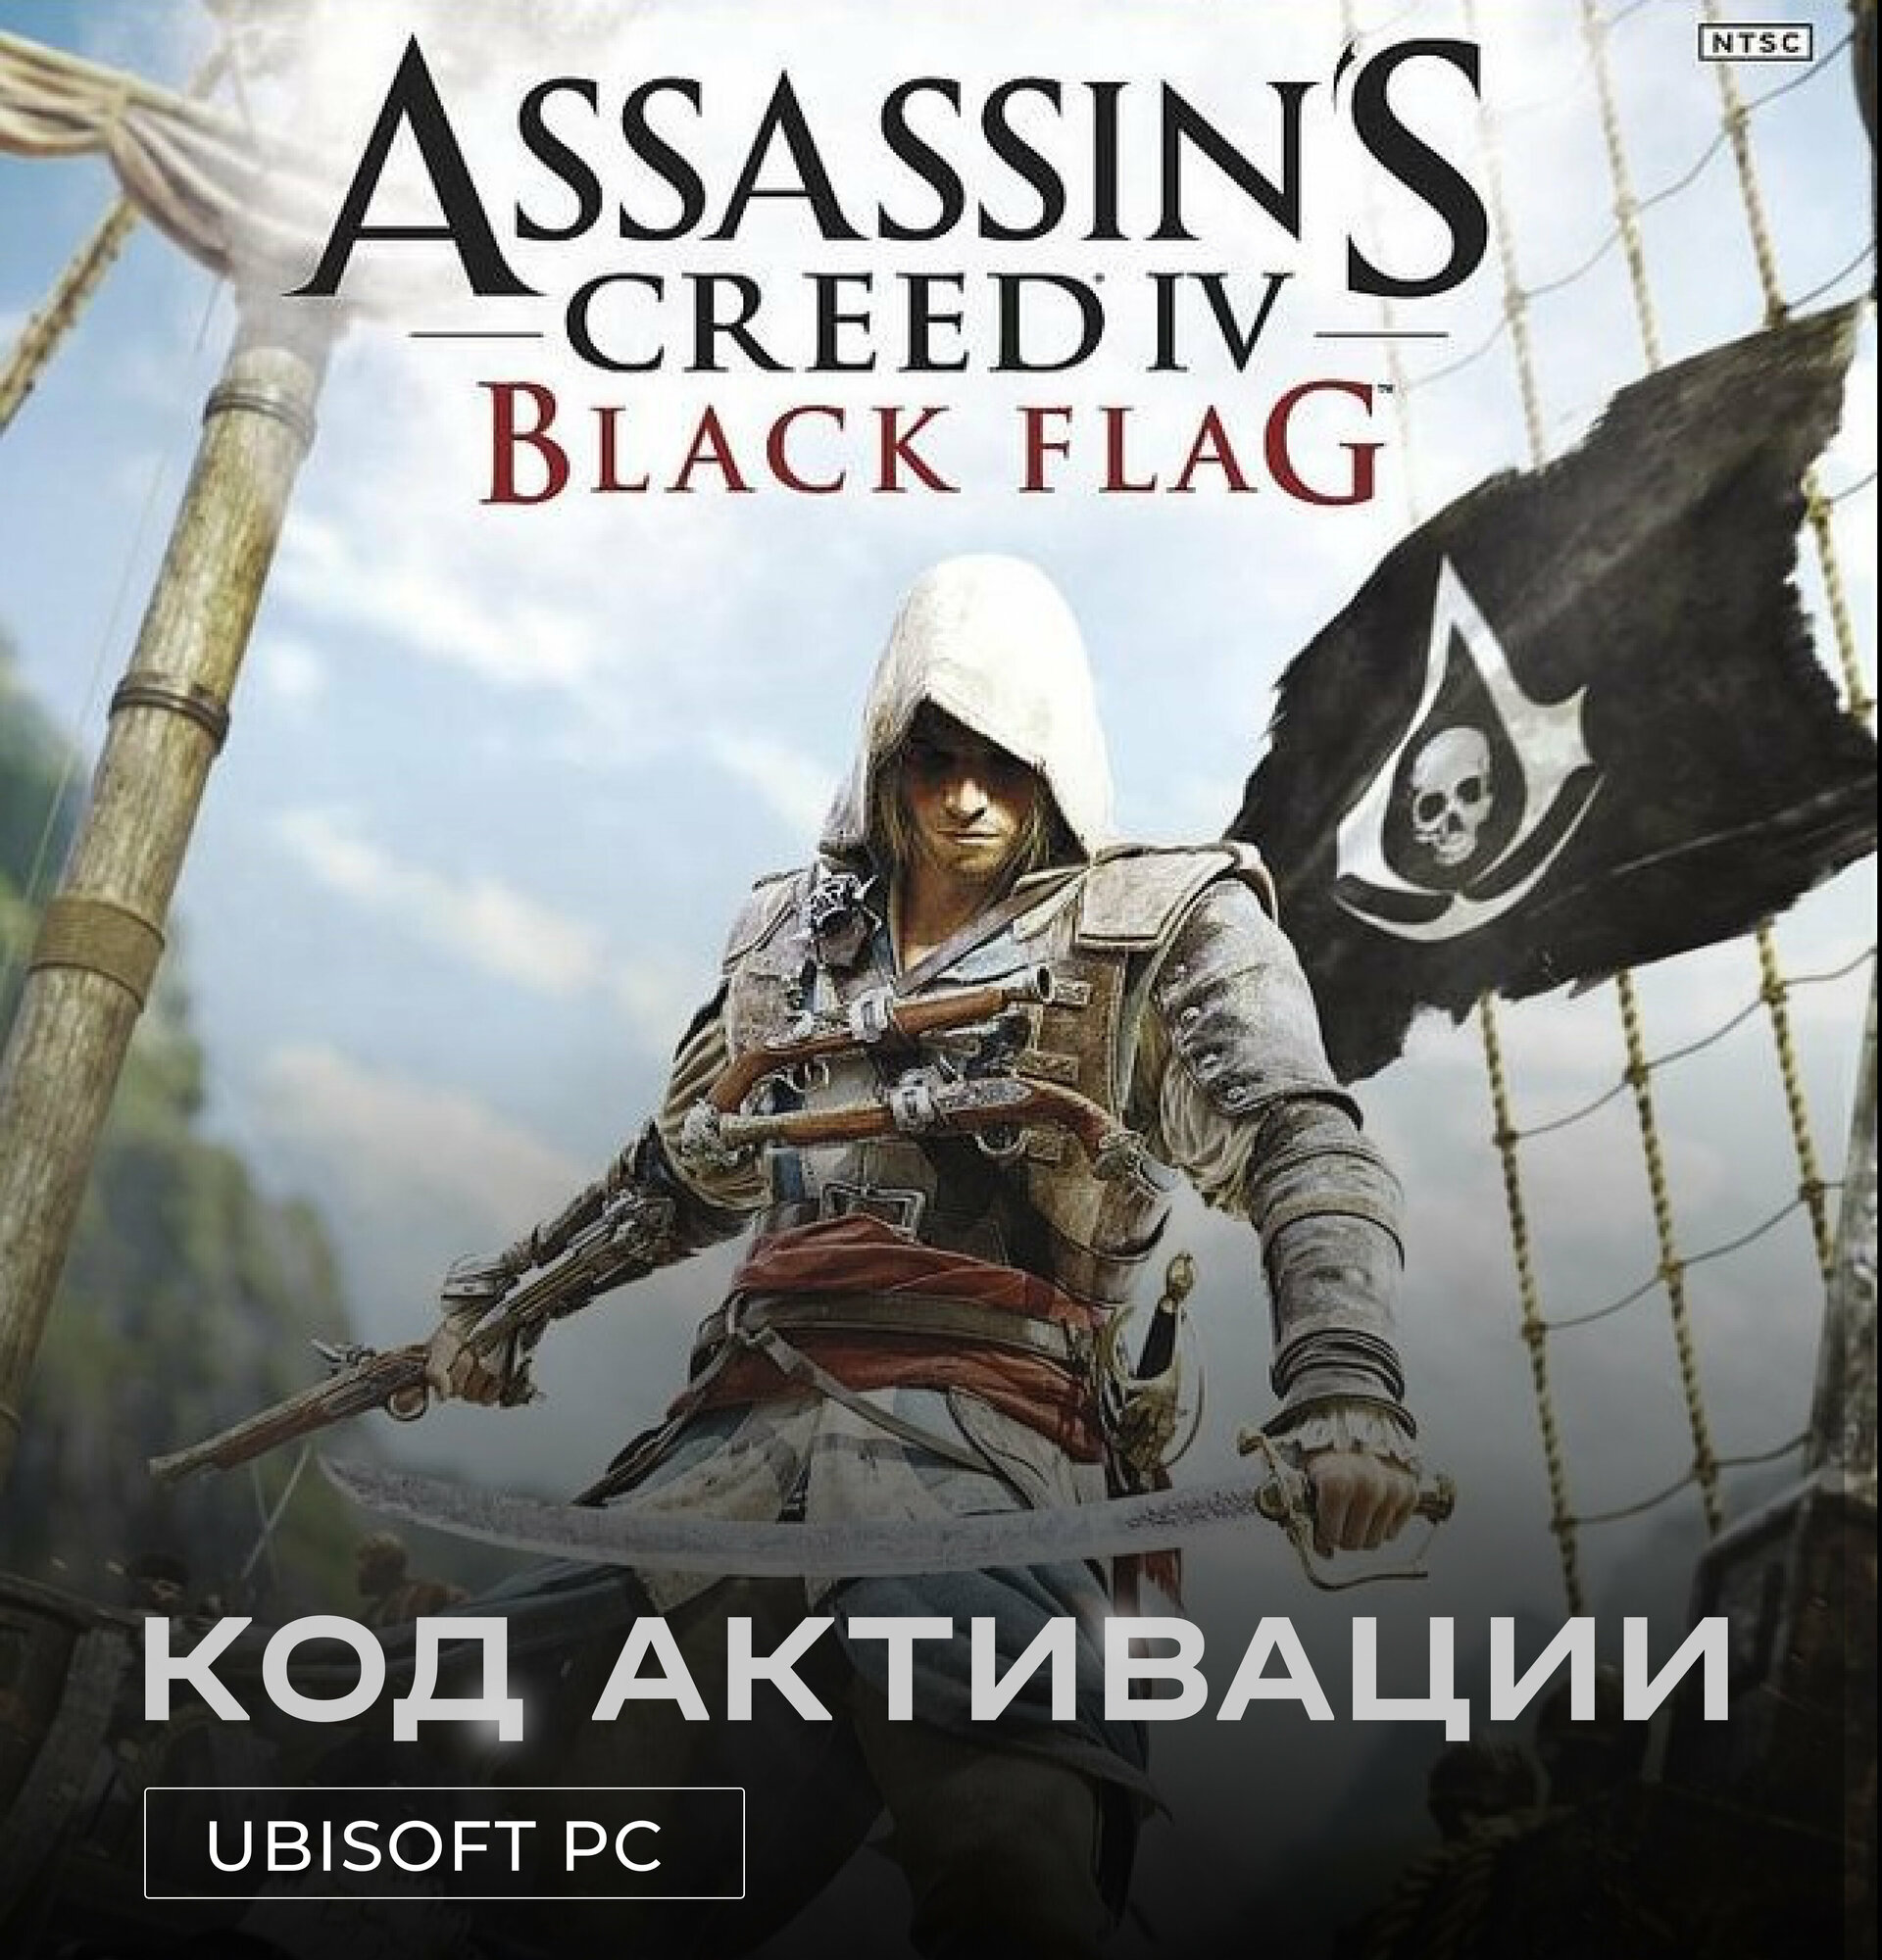 Игра Assassin’s Creed IV: Black Flag для PC Ubisoft (РФ), полностью на русском, электронный ключ